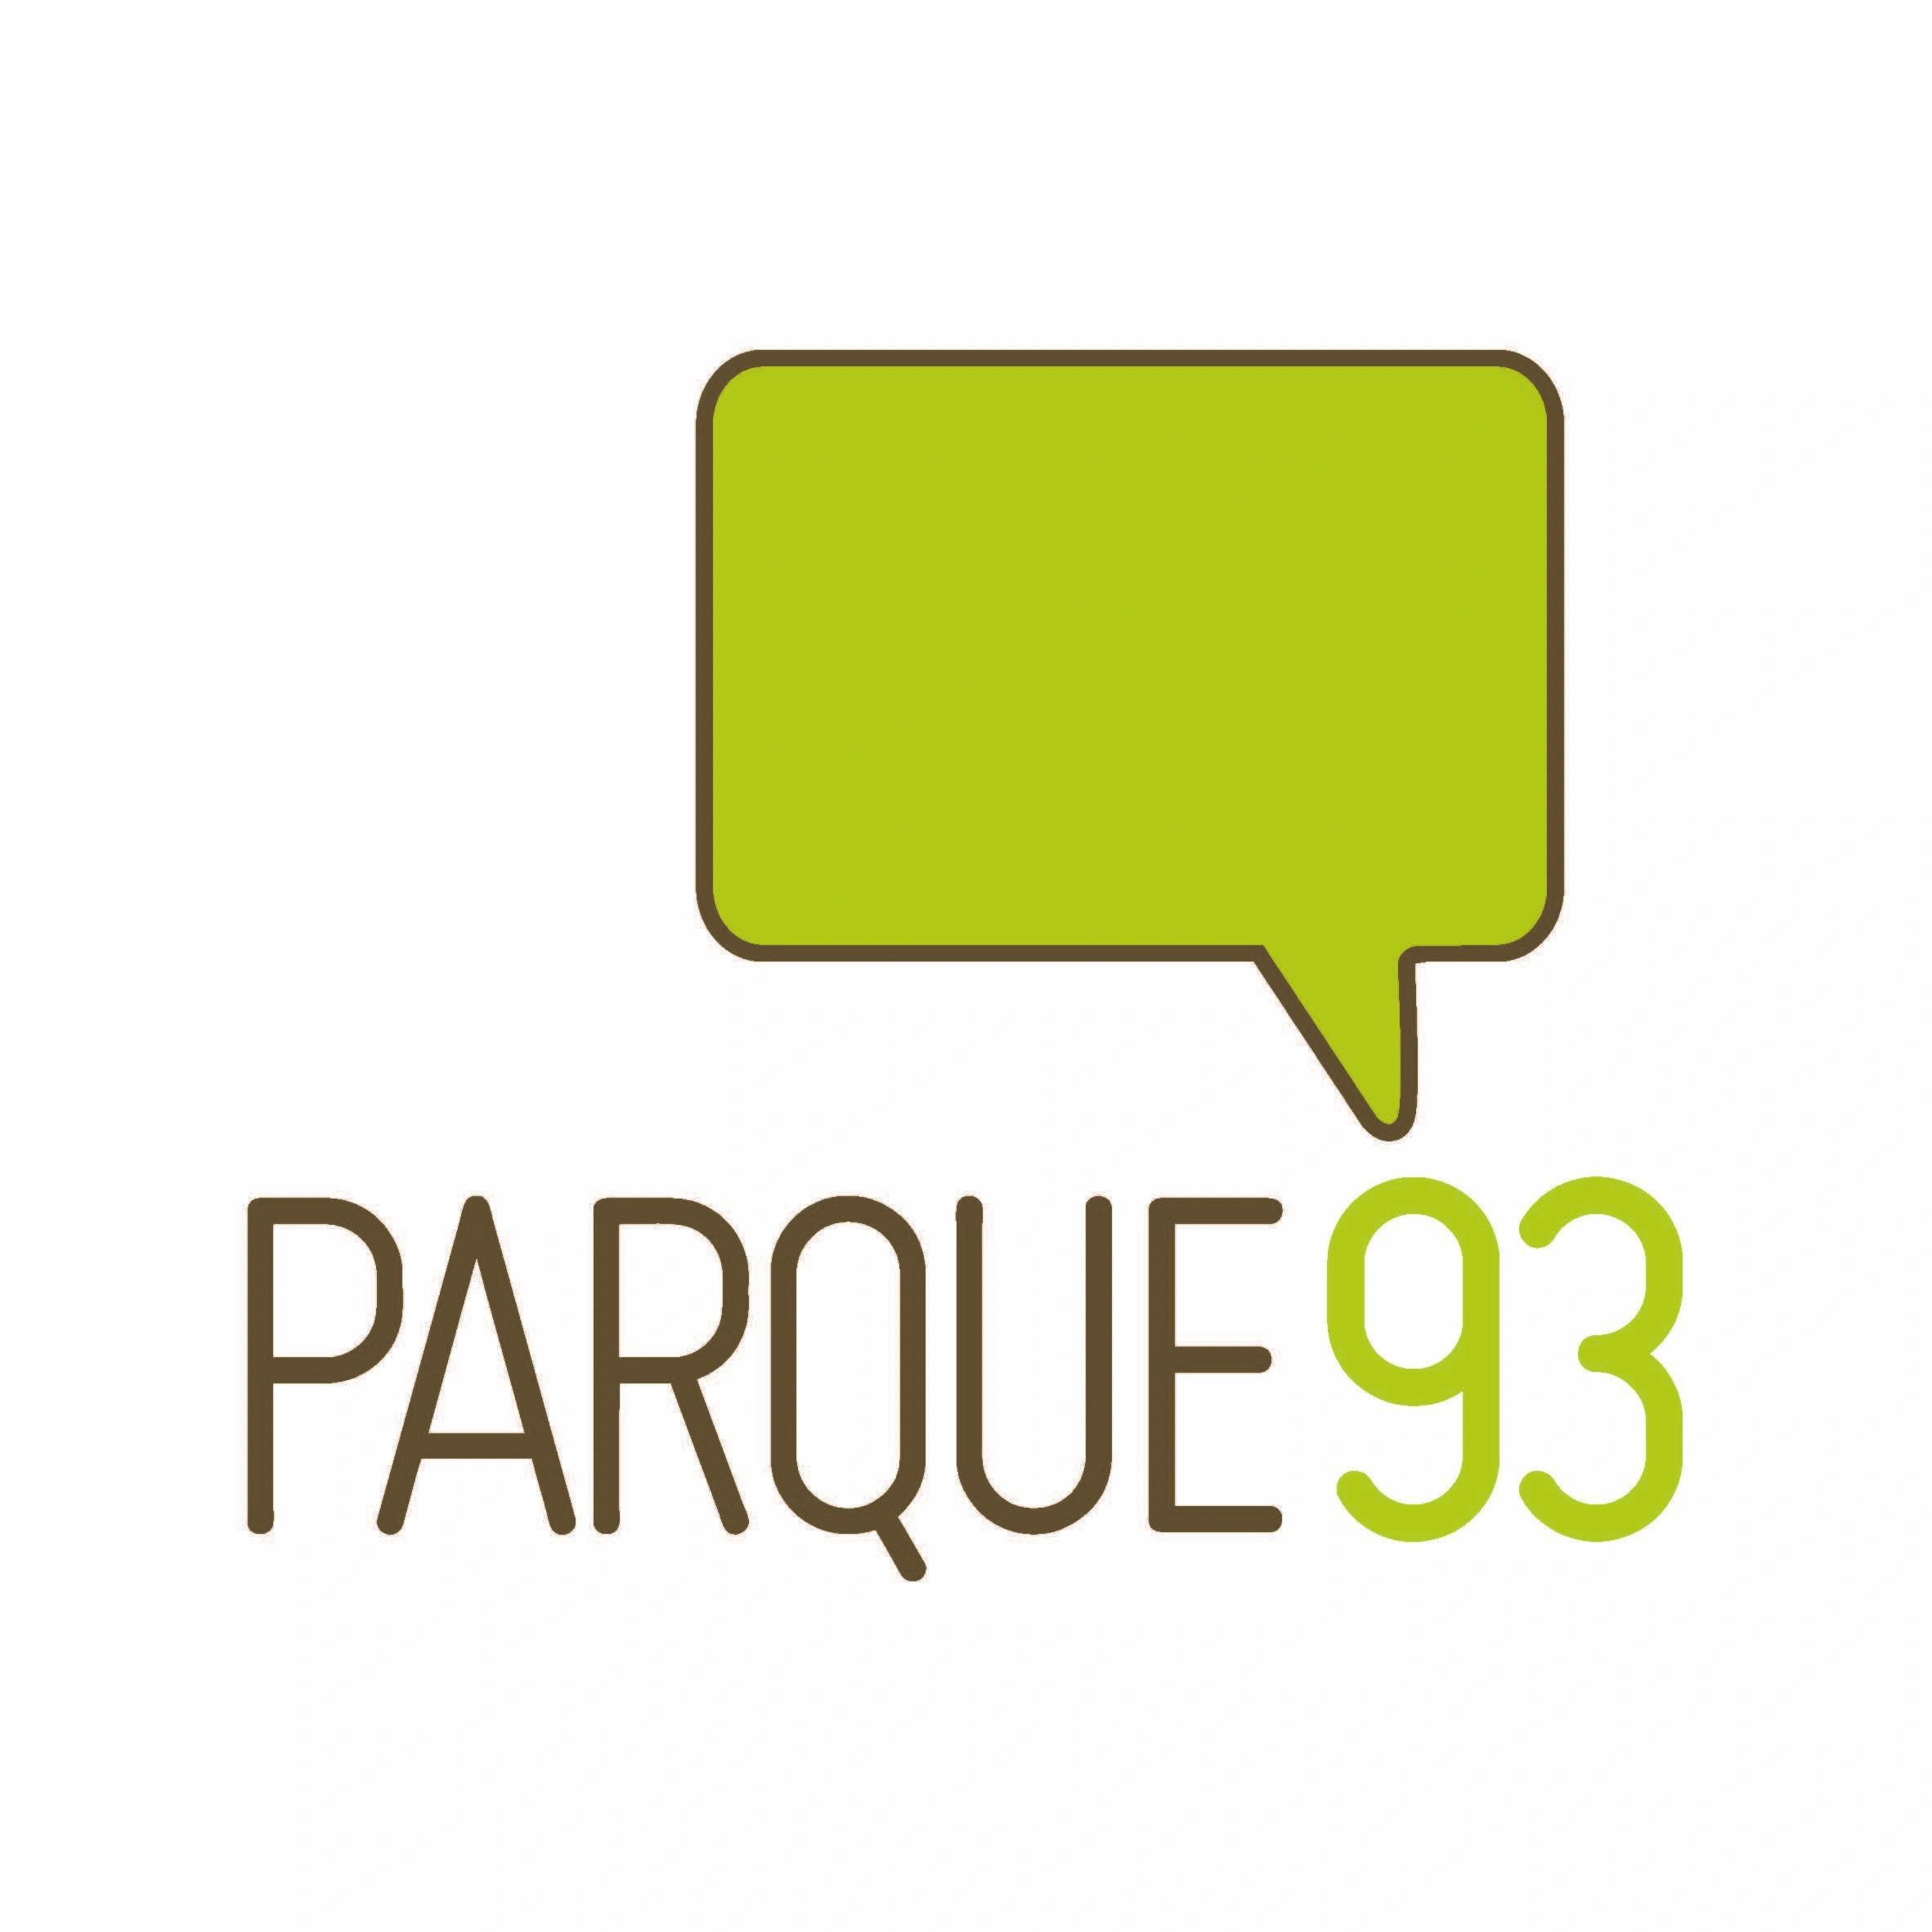 (c) Parque93.com